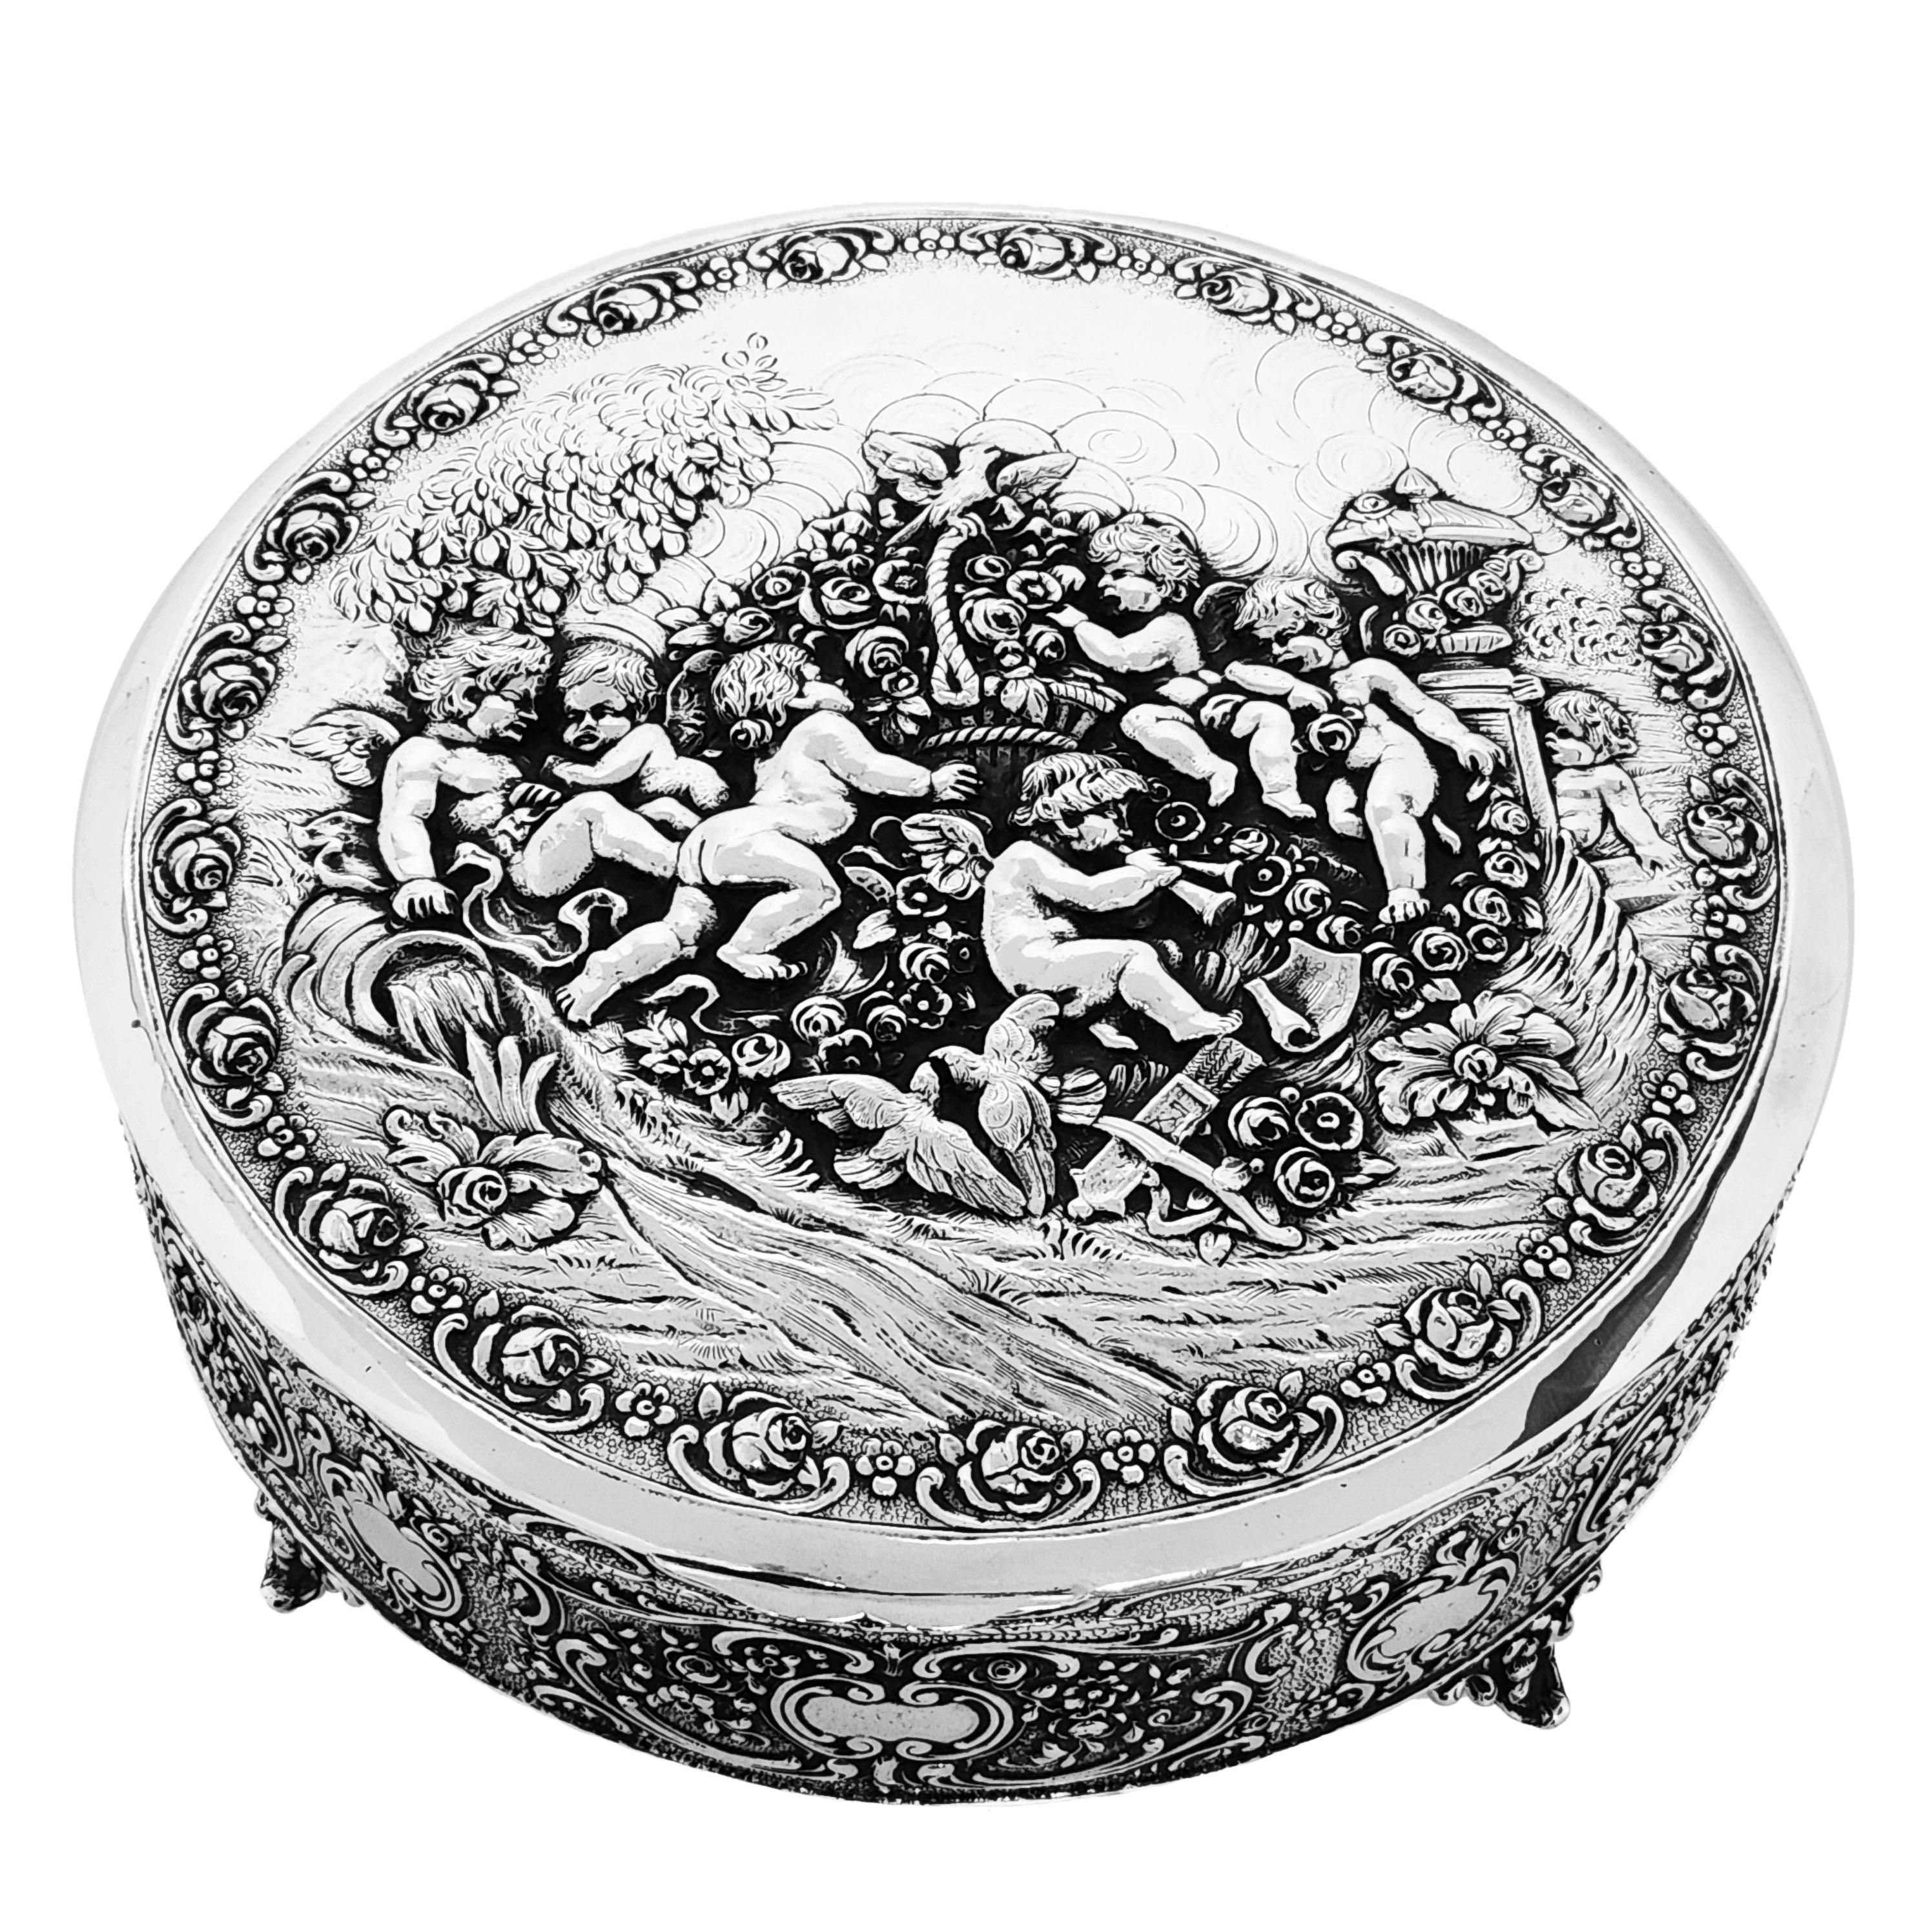 Eine beeindruckende antike Dose aus massivem Silber mit rundem Korpus und aufklappbarem Deckel. Die Dose ist sowohl auf dem Deckel als auch an den Seiten mit kunstvollen und detaillierten ziselierten Motiven verziert. Der Deckel zeigt eine Gruppe